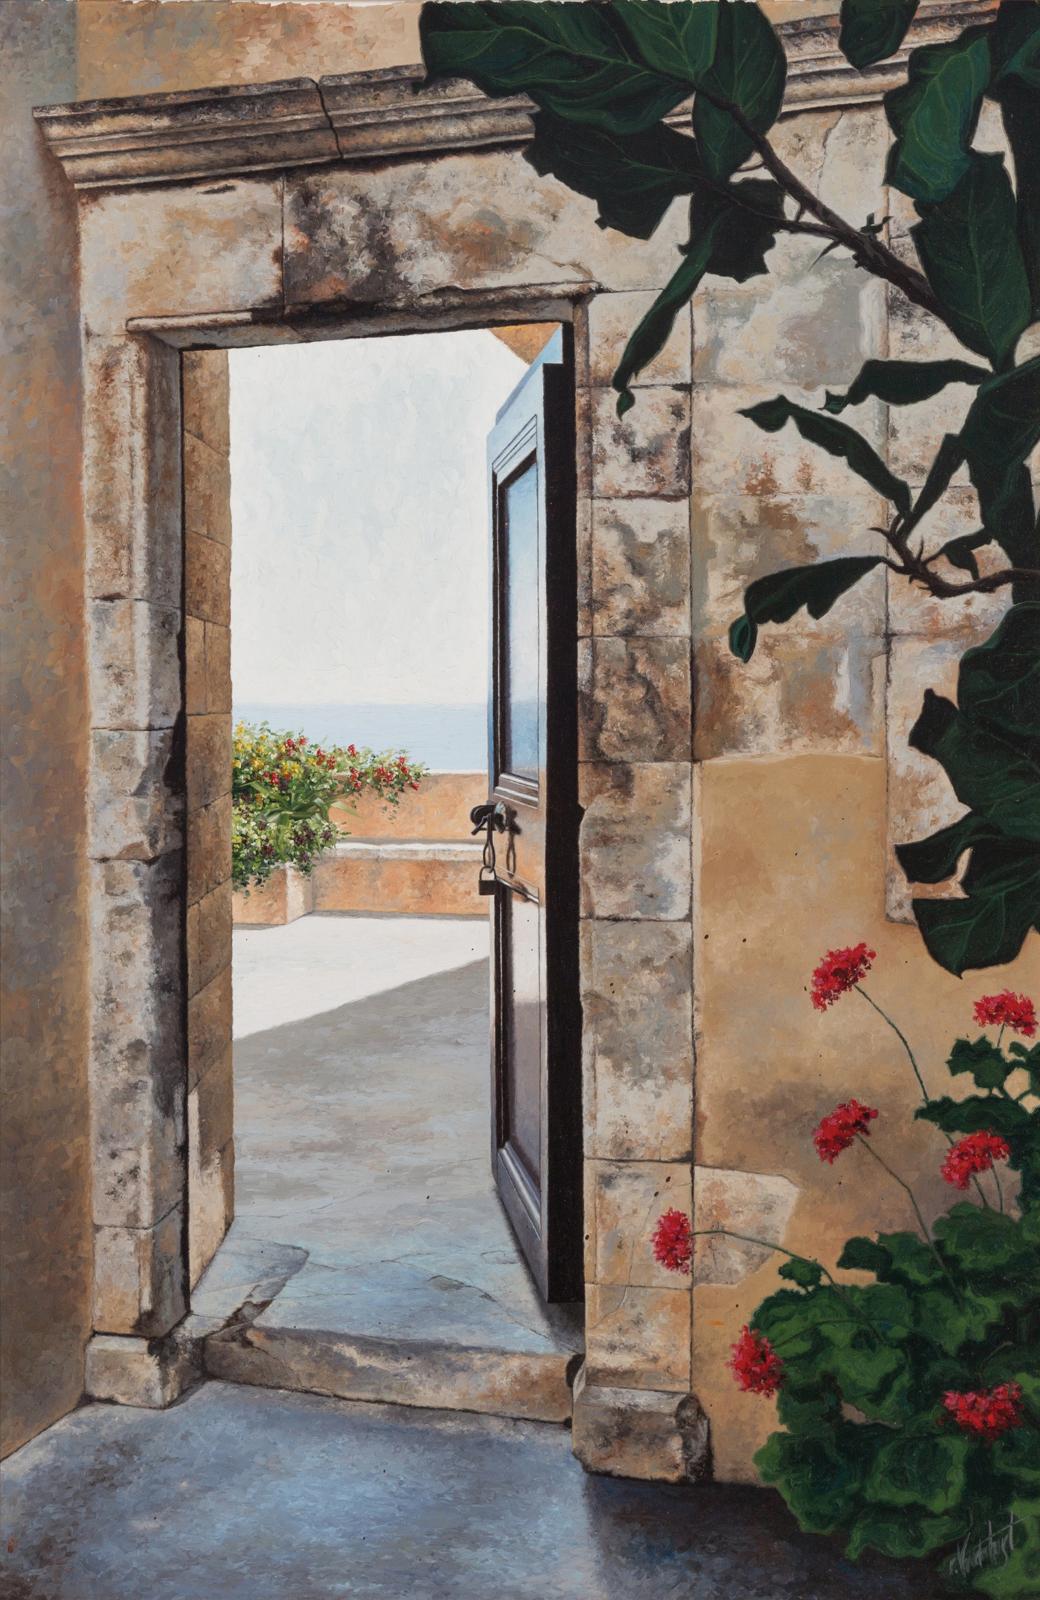 Robert Vanderhorst (1951) - An Open Doorway In Greece